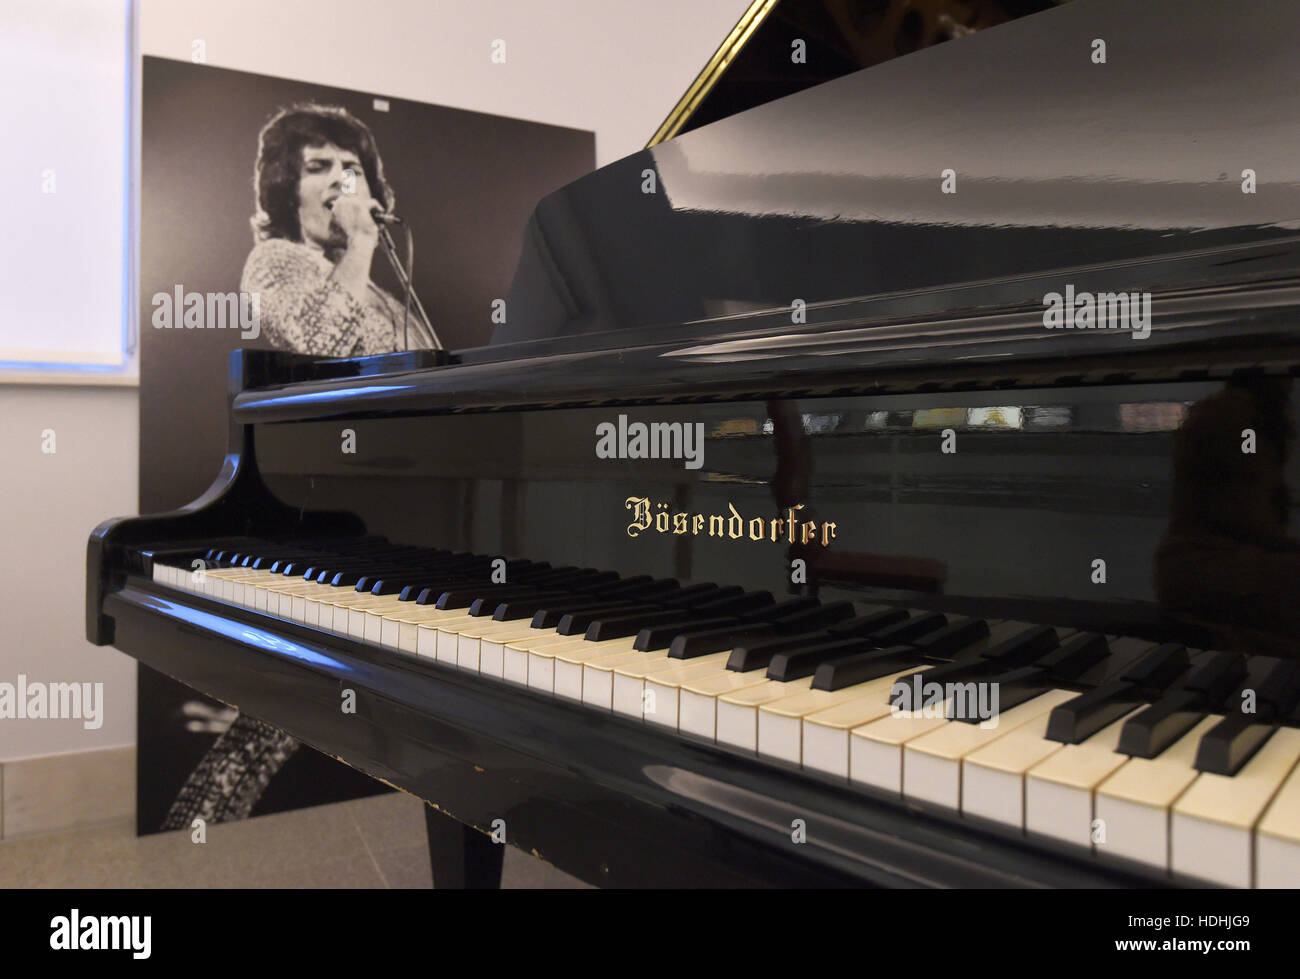 Un piano de cola Bosendorfer Imperial, jugado por la Reina, Coldplay, Robbie  Williams y Talk Talk en la pantalla antes de la venta de recuerdos del  entretenimiento en Bonhams en Knightsbridge, Londres